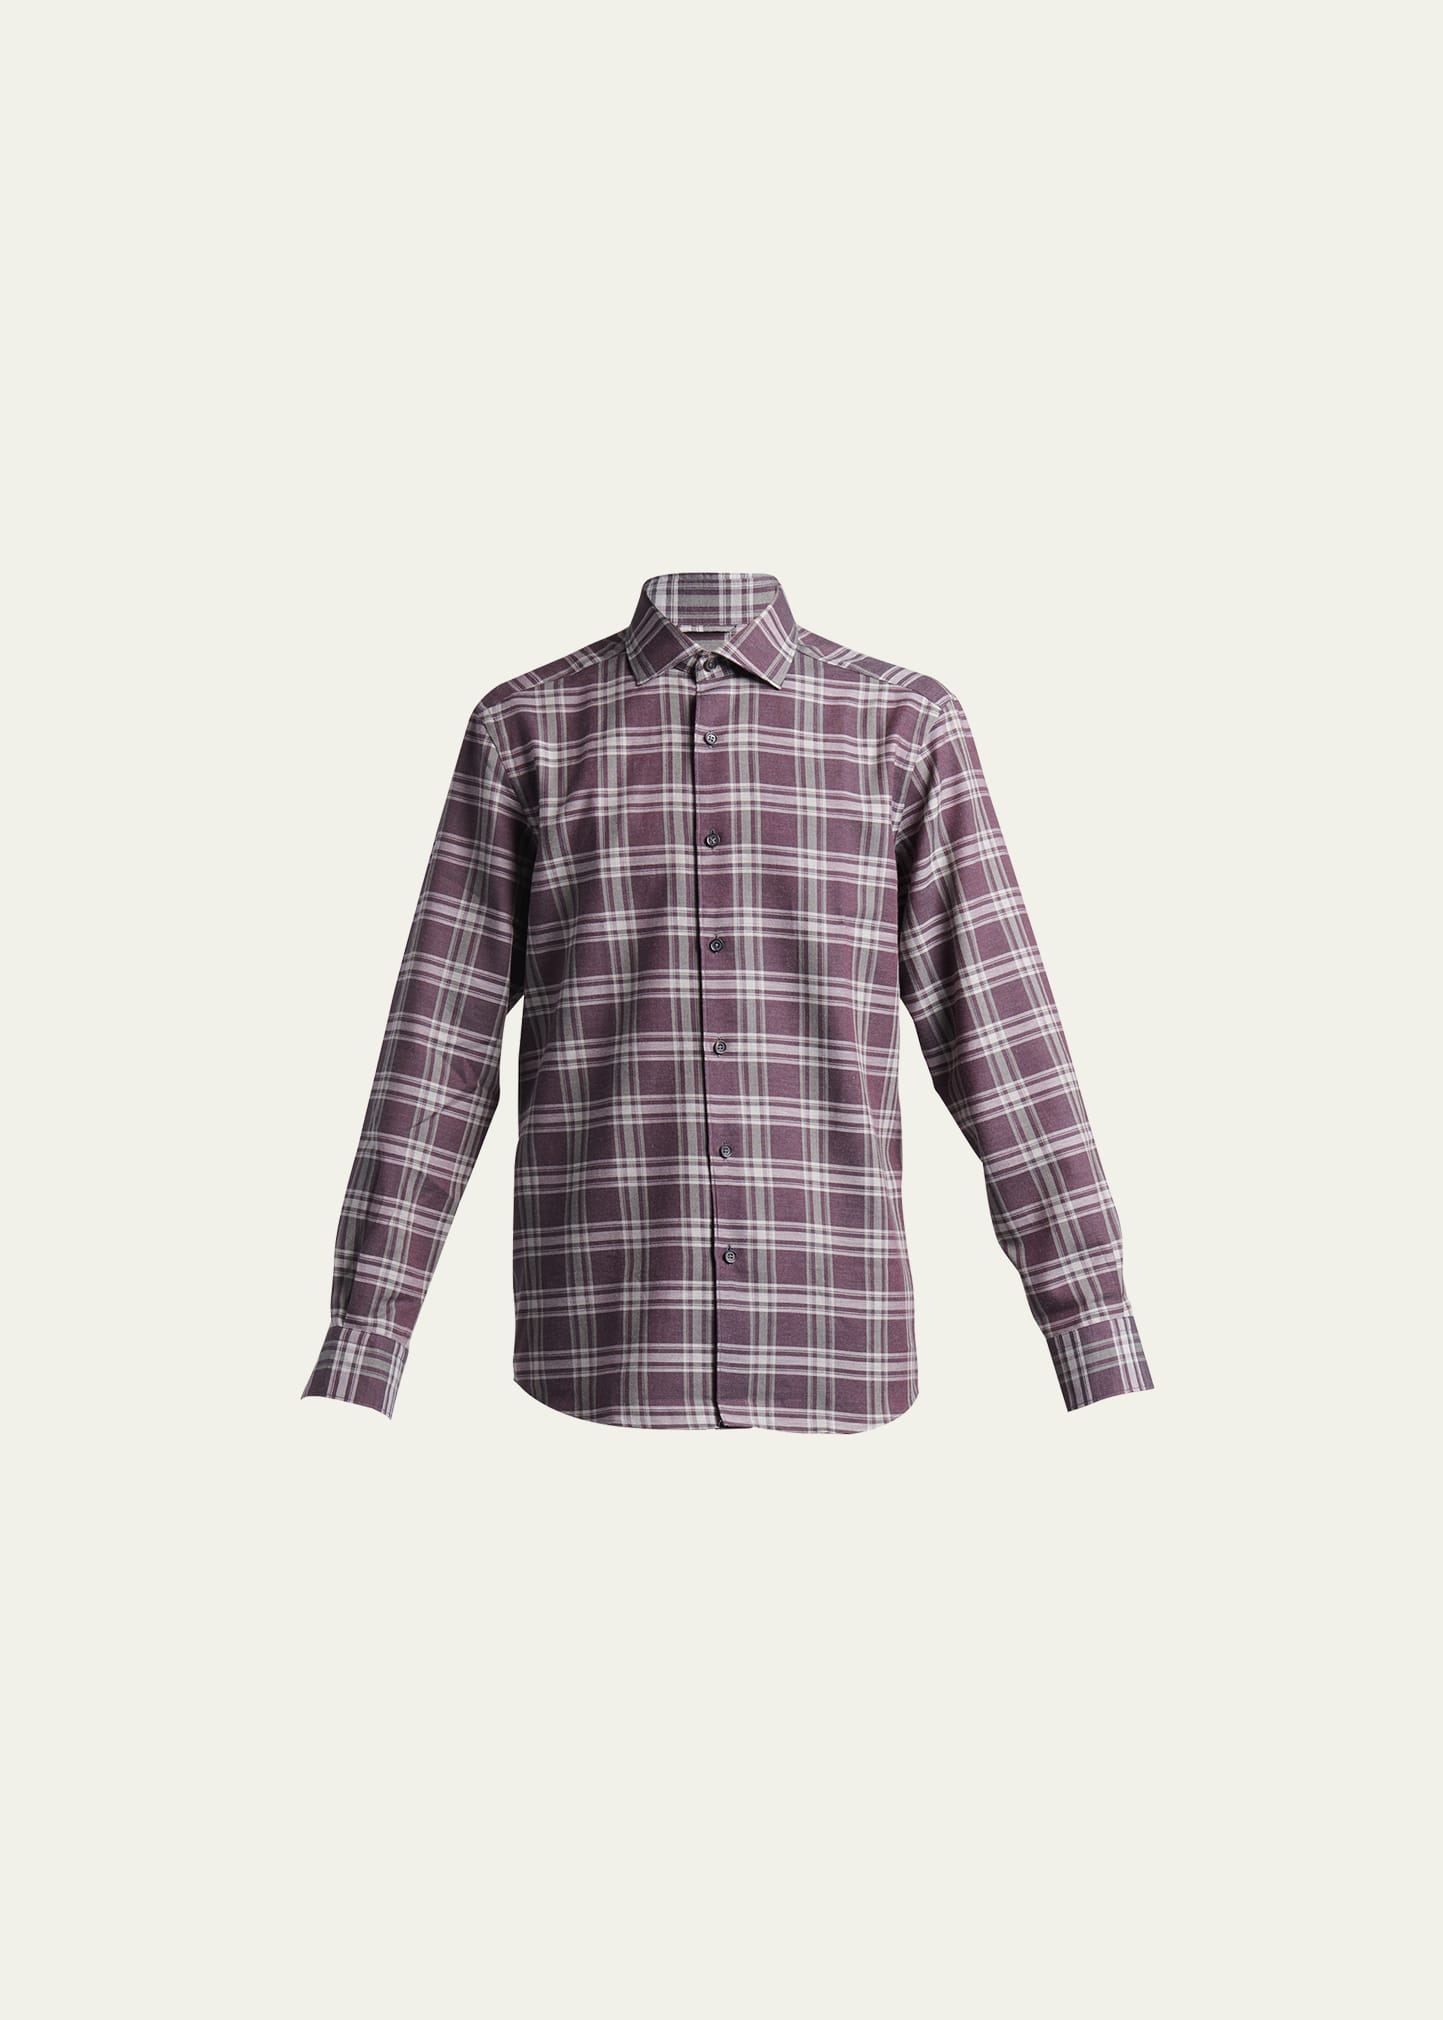 ZEGNA Men's Plaid Cotton-Cashmere Sport Shirt